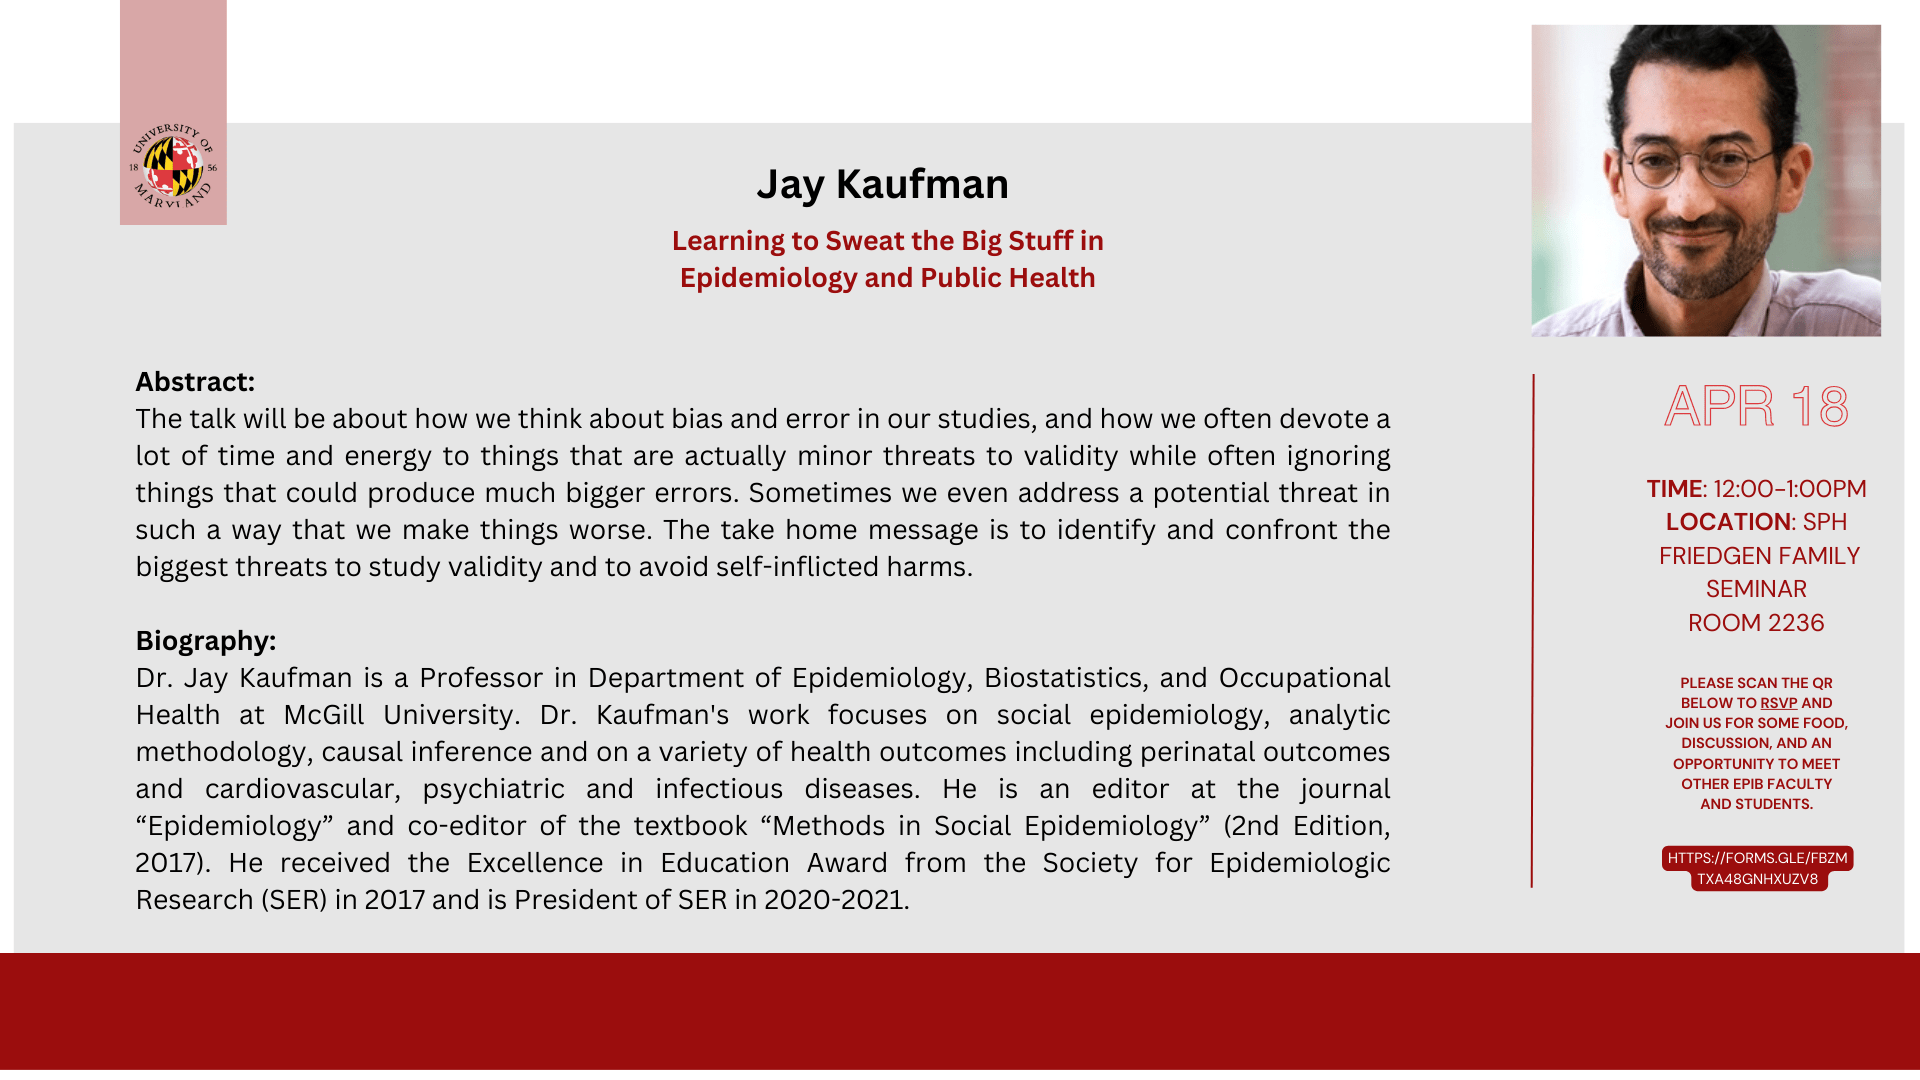 Dr. Jay Kaufman